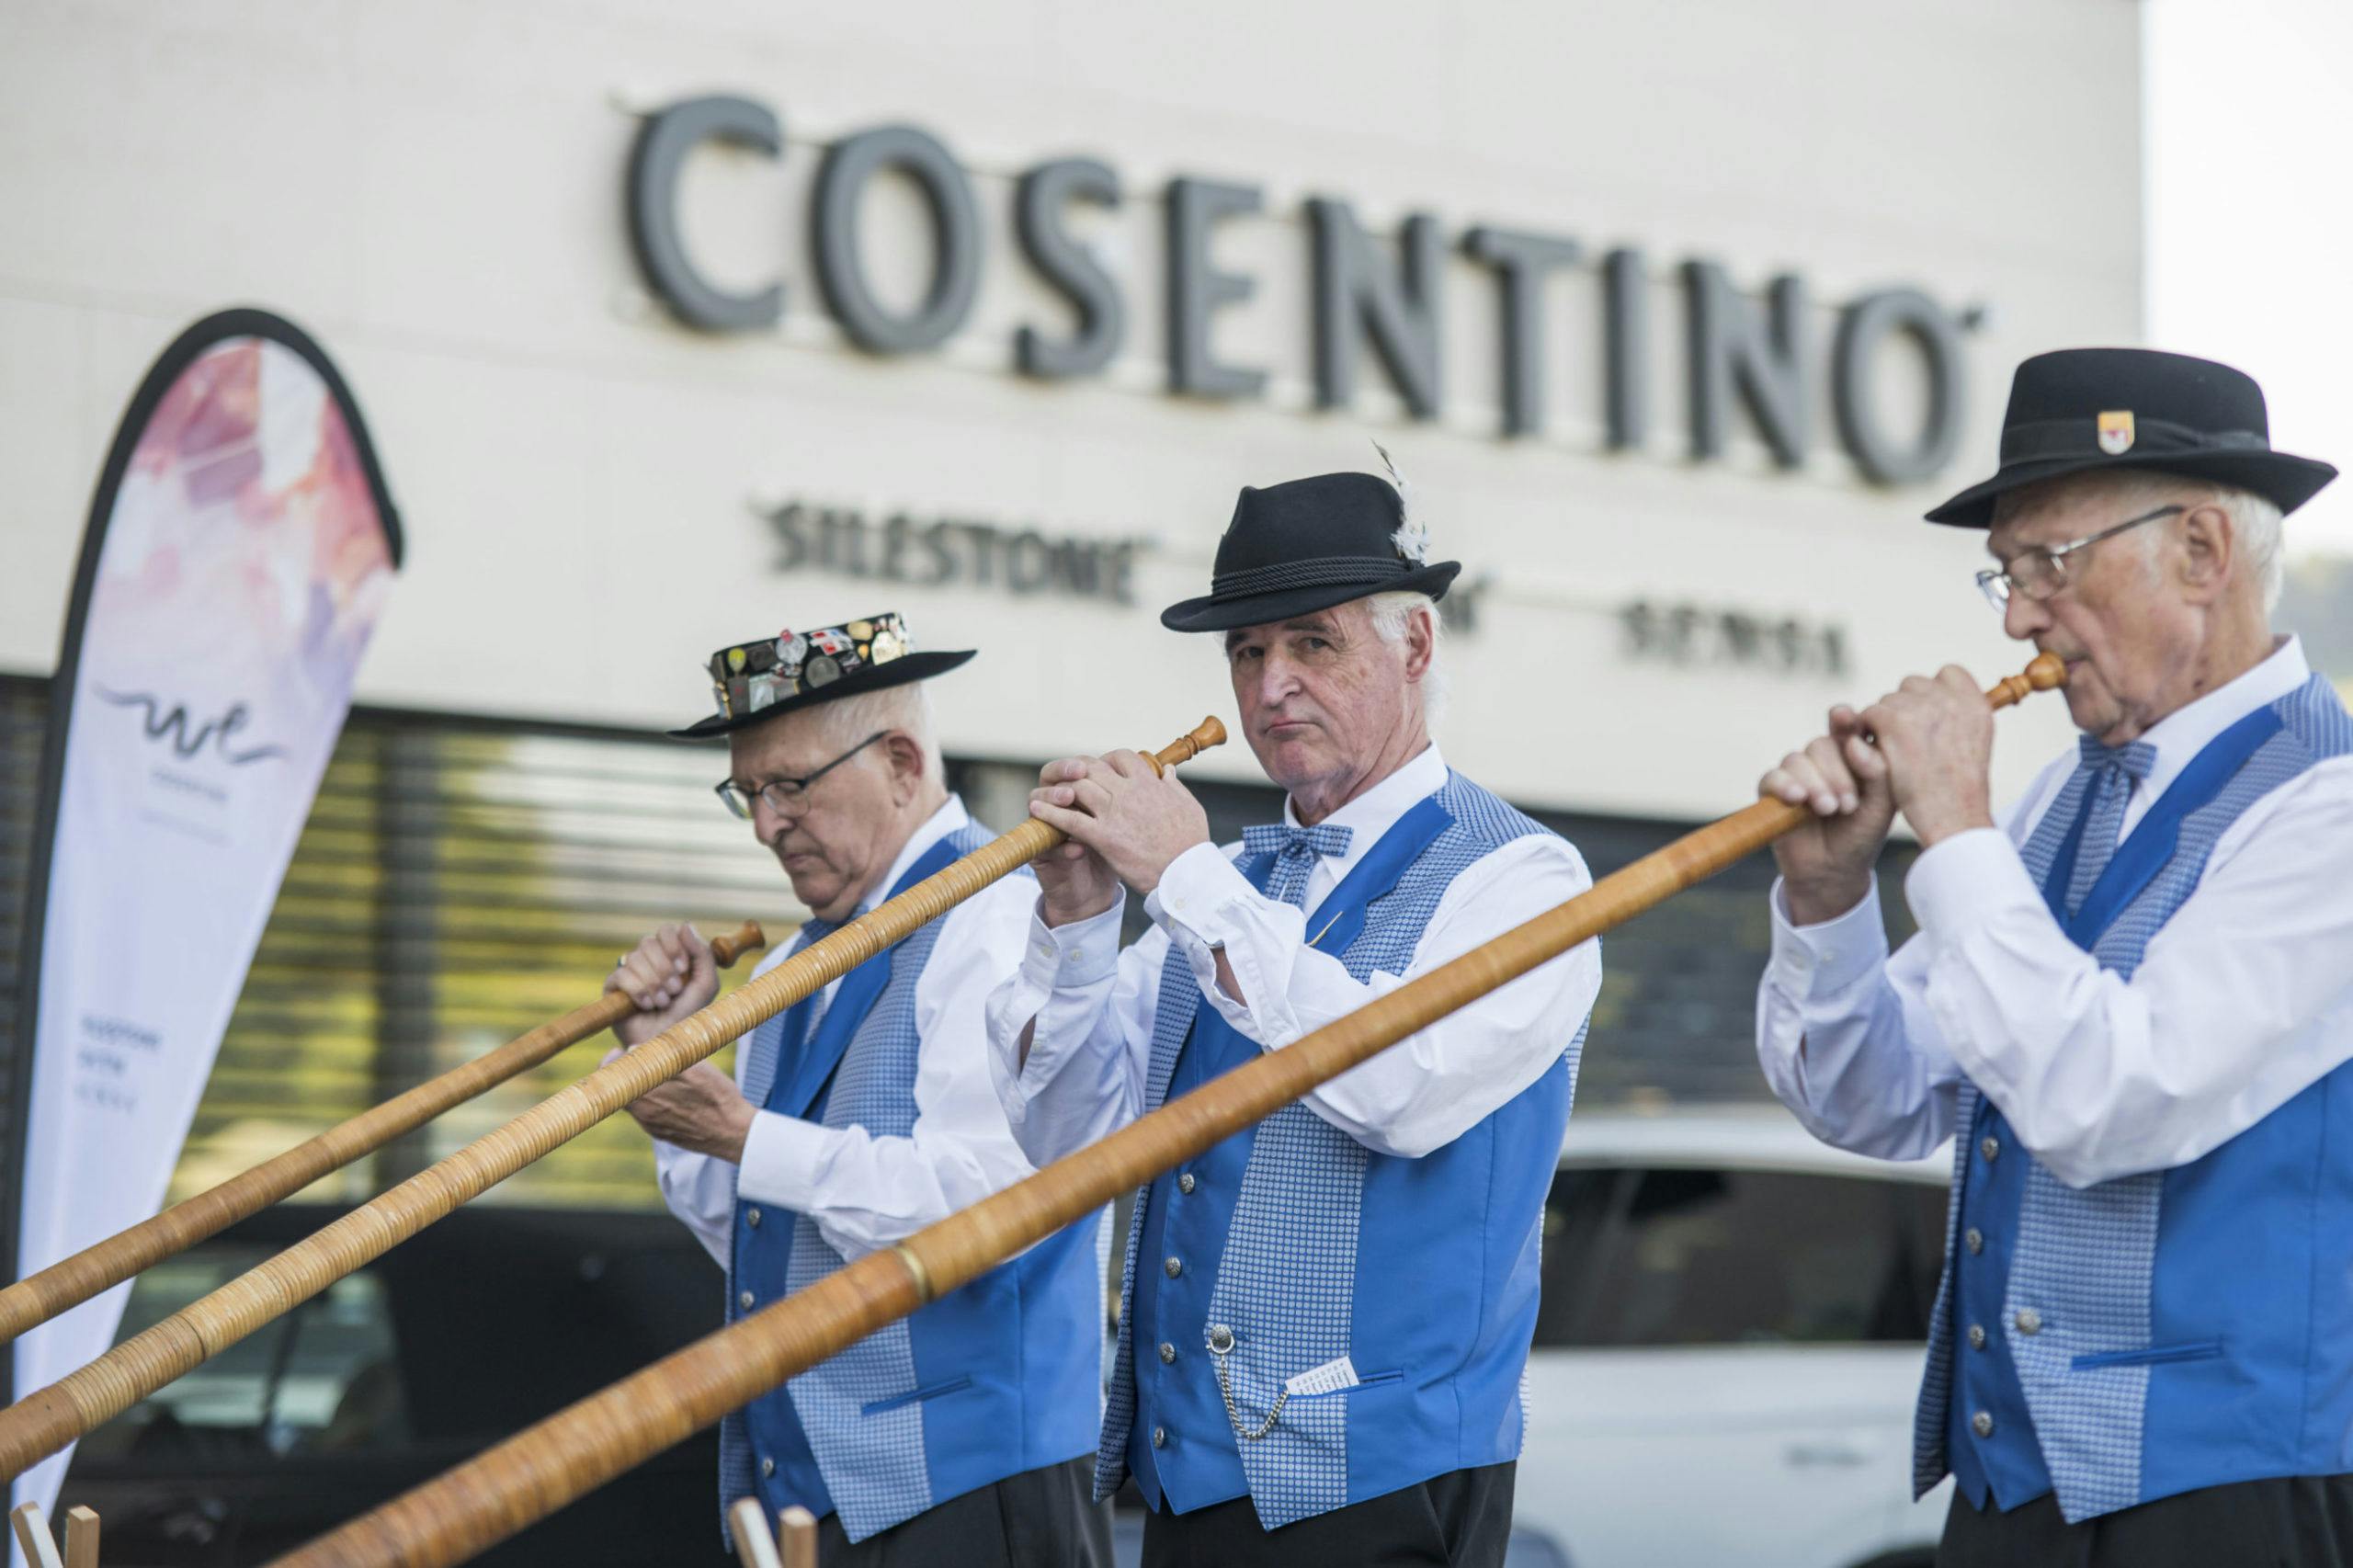 Bildnummer 32 des aktuellen Abschnitts von Neueröffnung Cosentino Schweiz in Neuhaus von Cosentino Deutschland